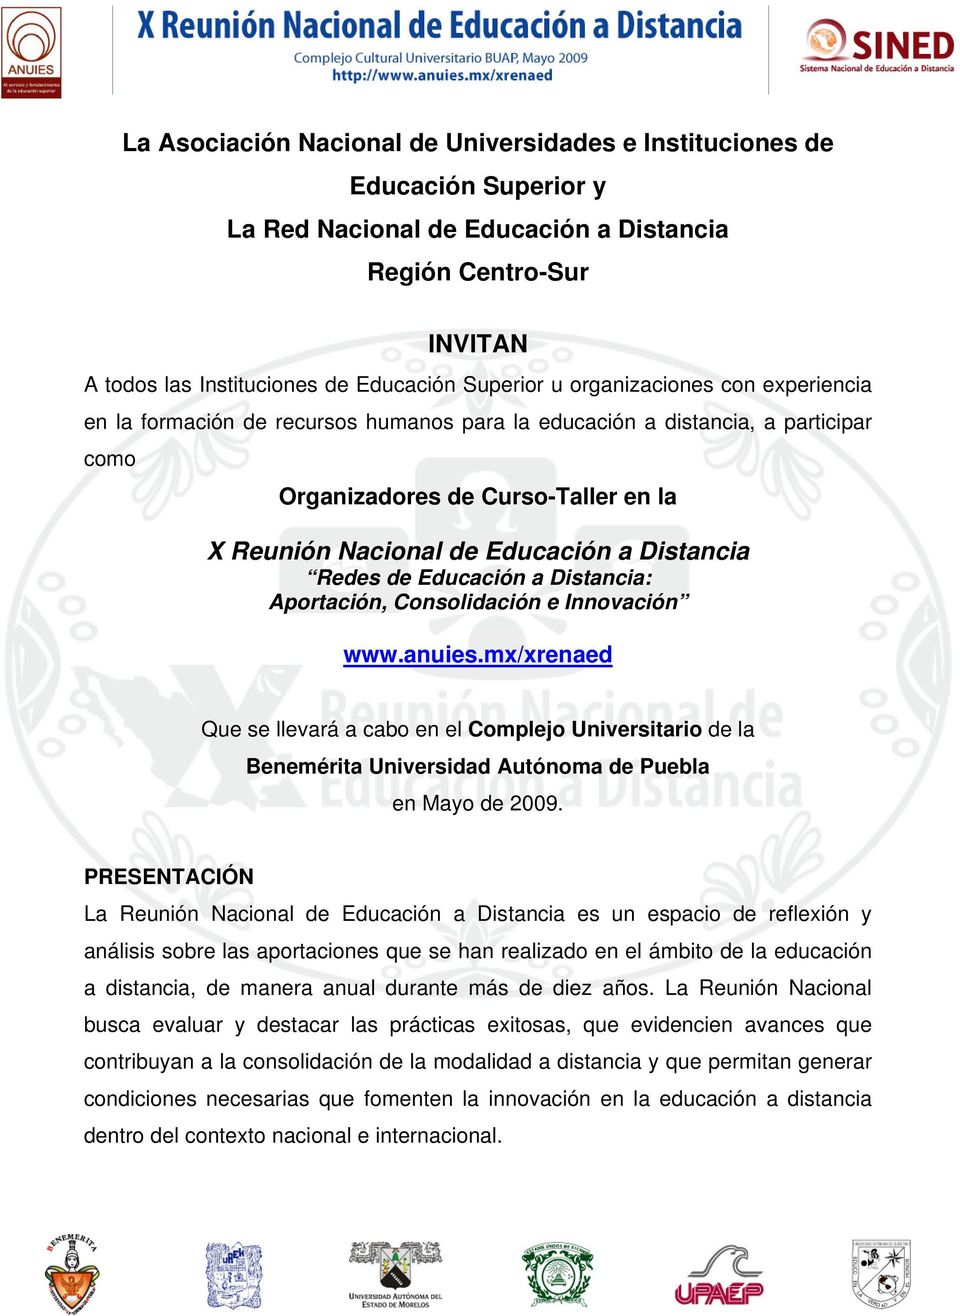 Redes de Educación a Distancia: Aportación, Consolidación e Innovación www.anuies.